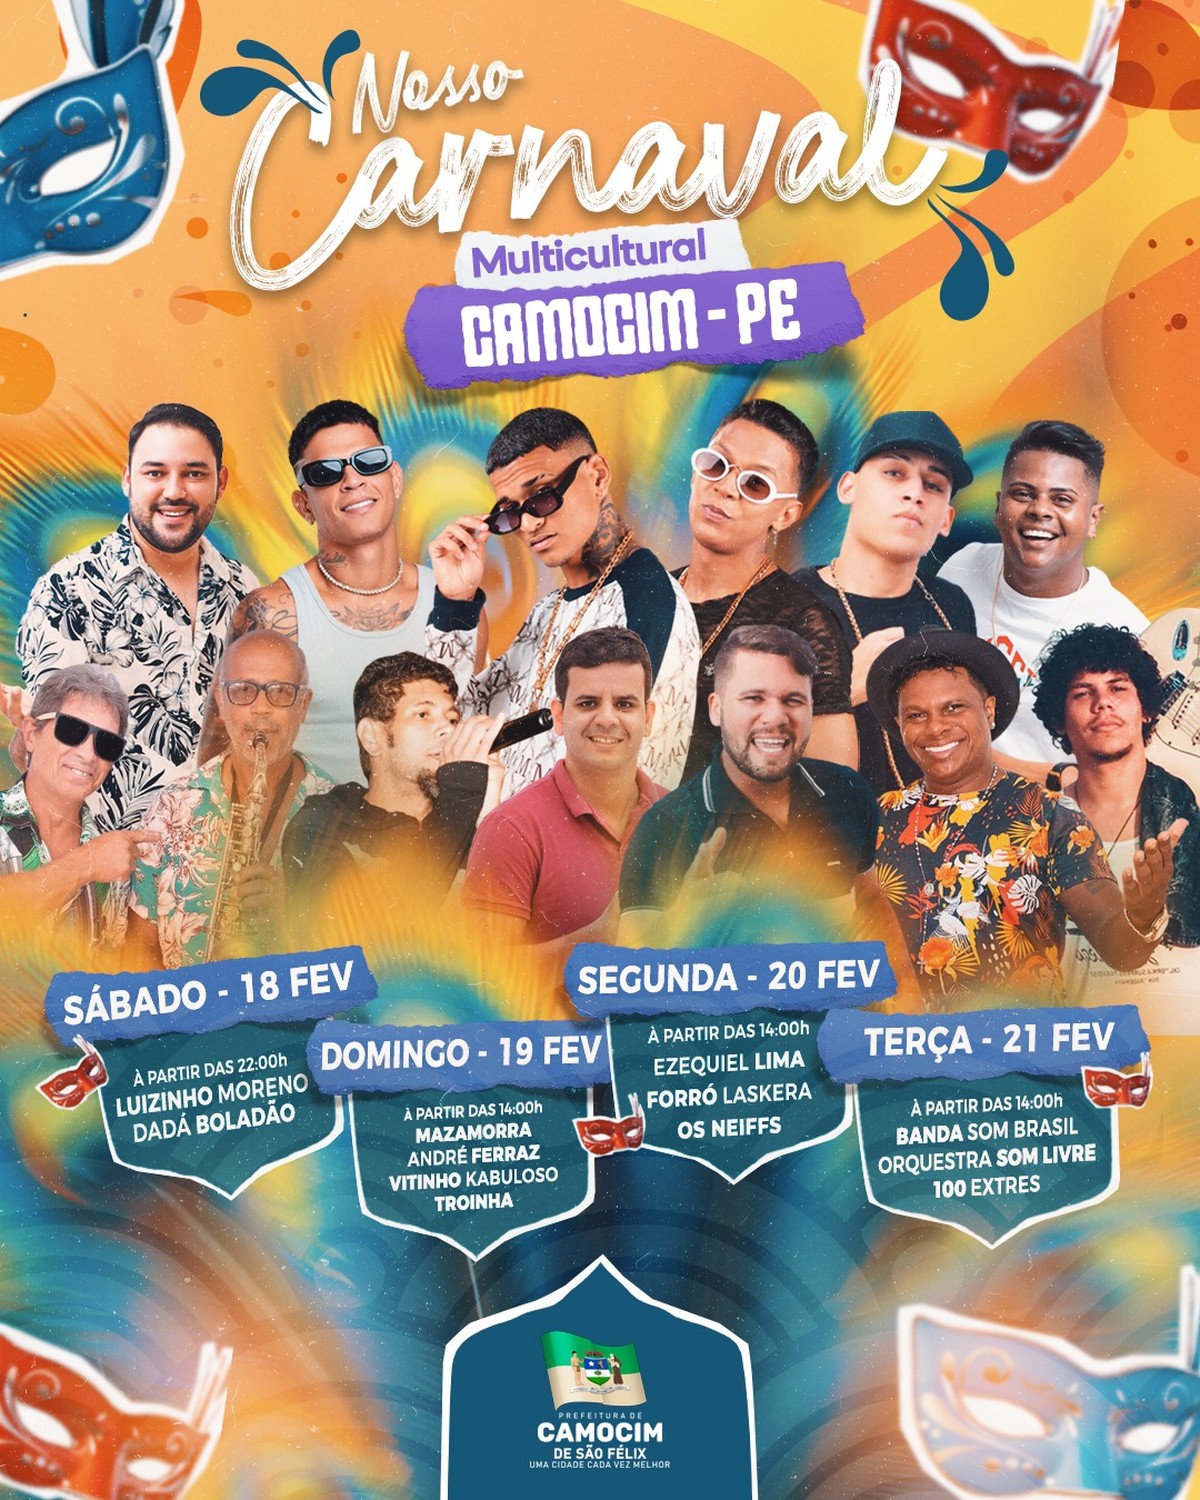 São Carlos Clube - Carnaval 2023: Confira a programação e venha cair na  folia!